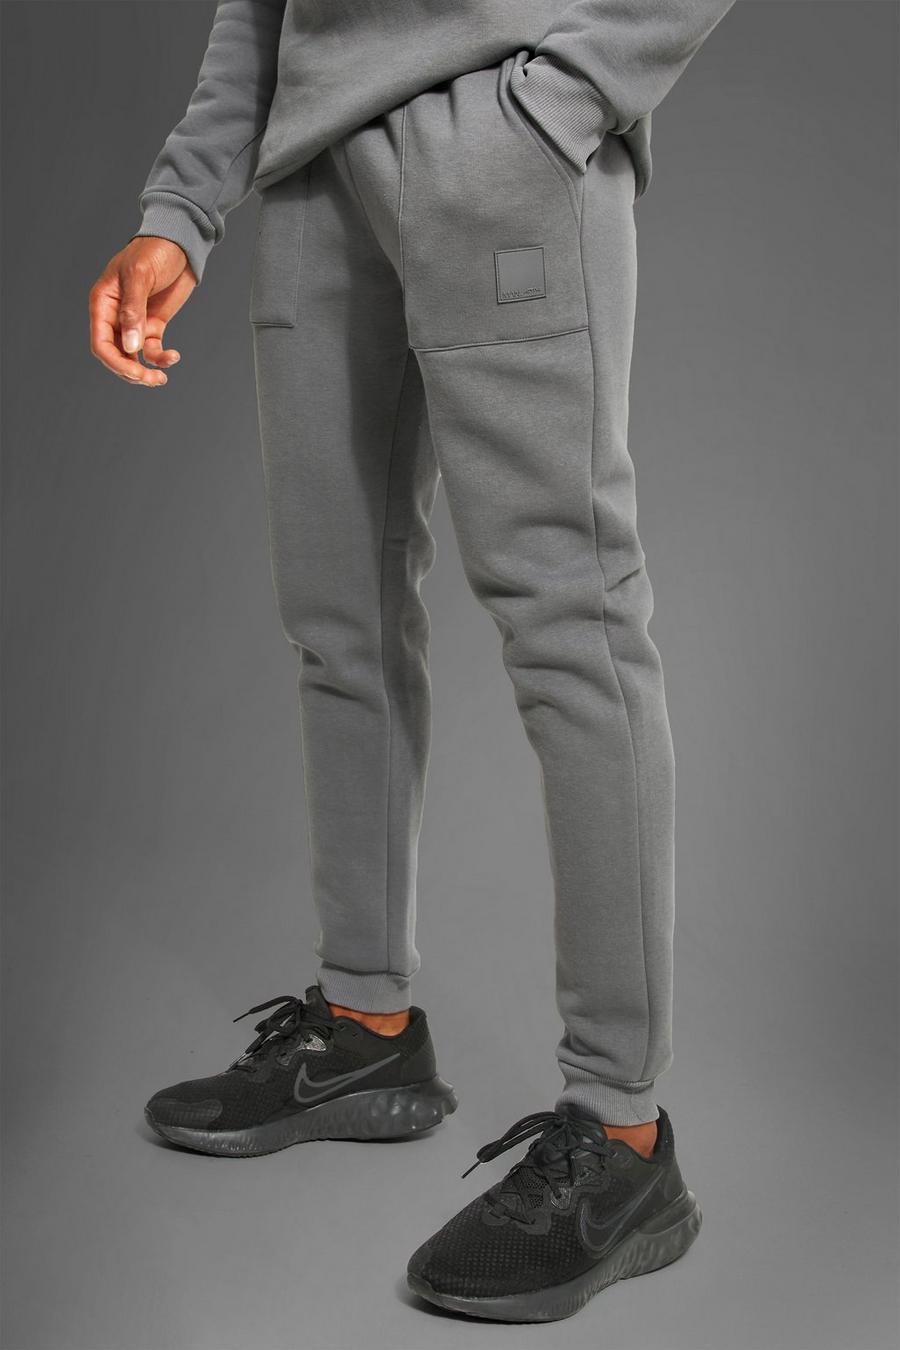 פחם gris מכנסיים ספורטיביים לחדר הכושר עם כיסים וכיתוב Man